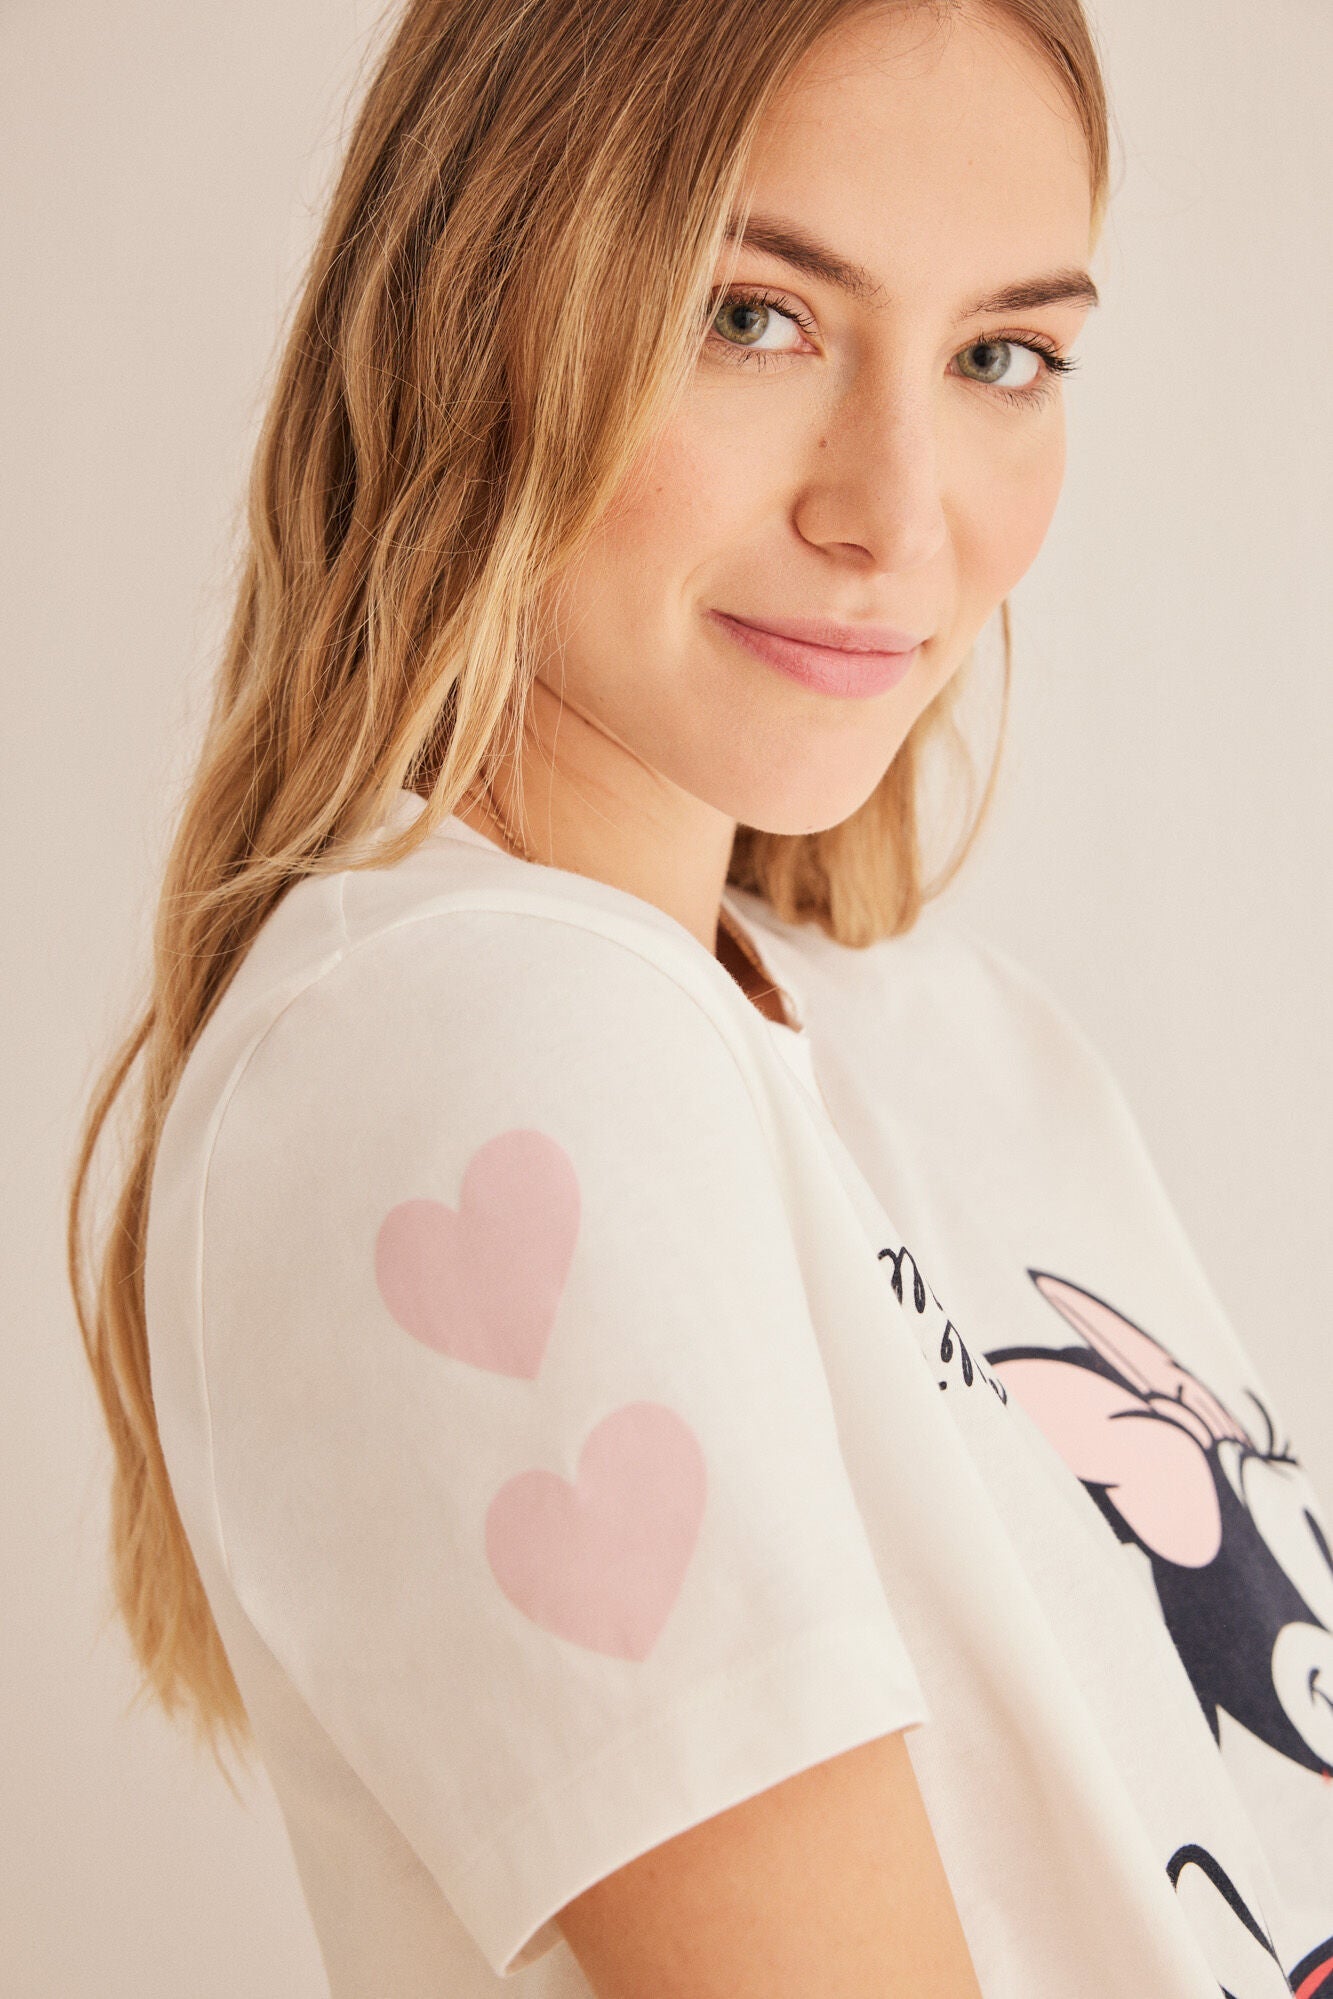 Minnie hearts pyjamas